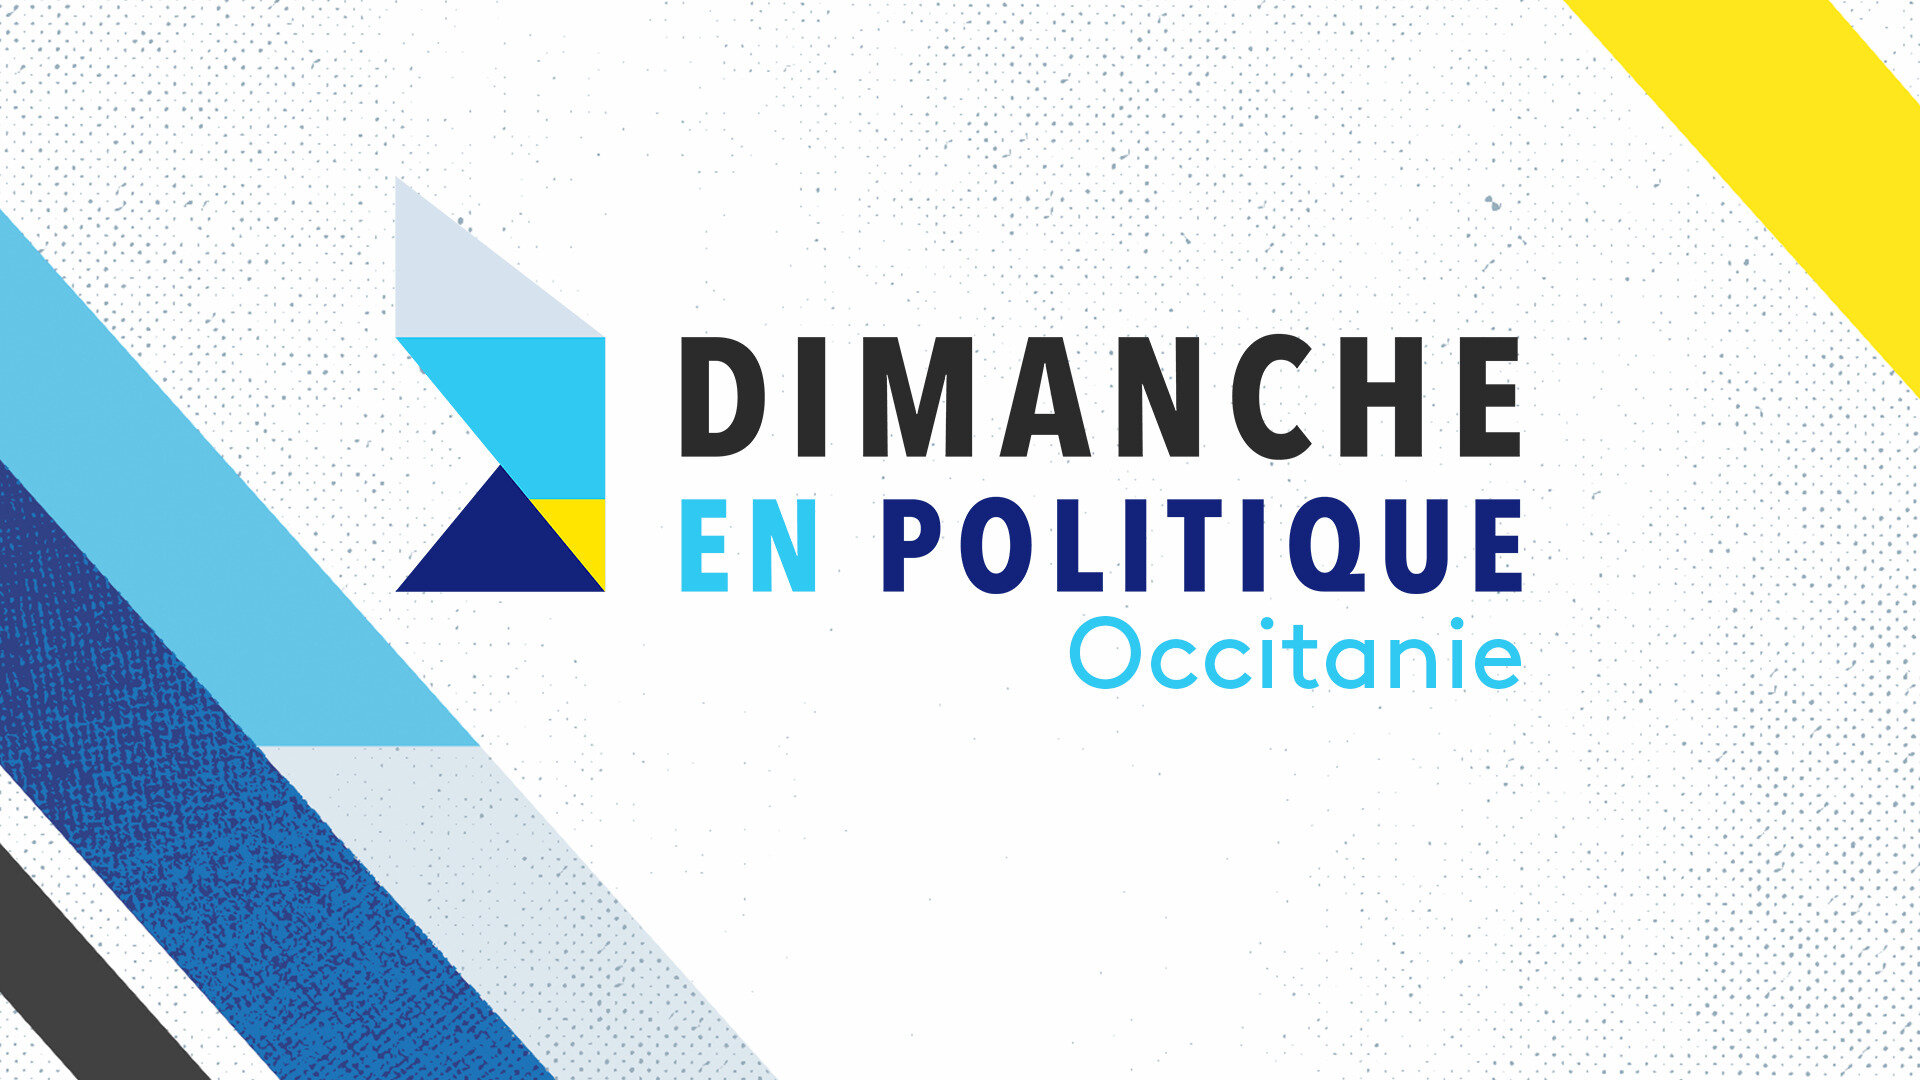 Dimanche en politique - Occitanie : Législatives 2022 : vers une recomposition du paysage politique en Occitanie ?